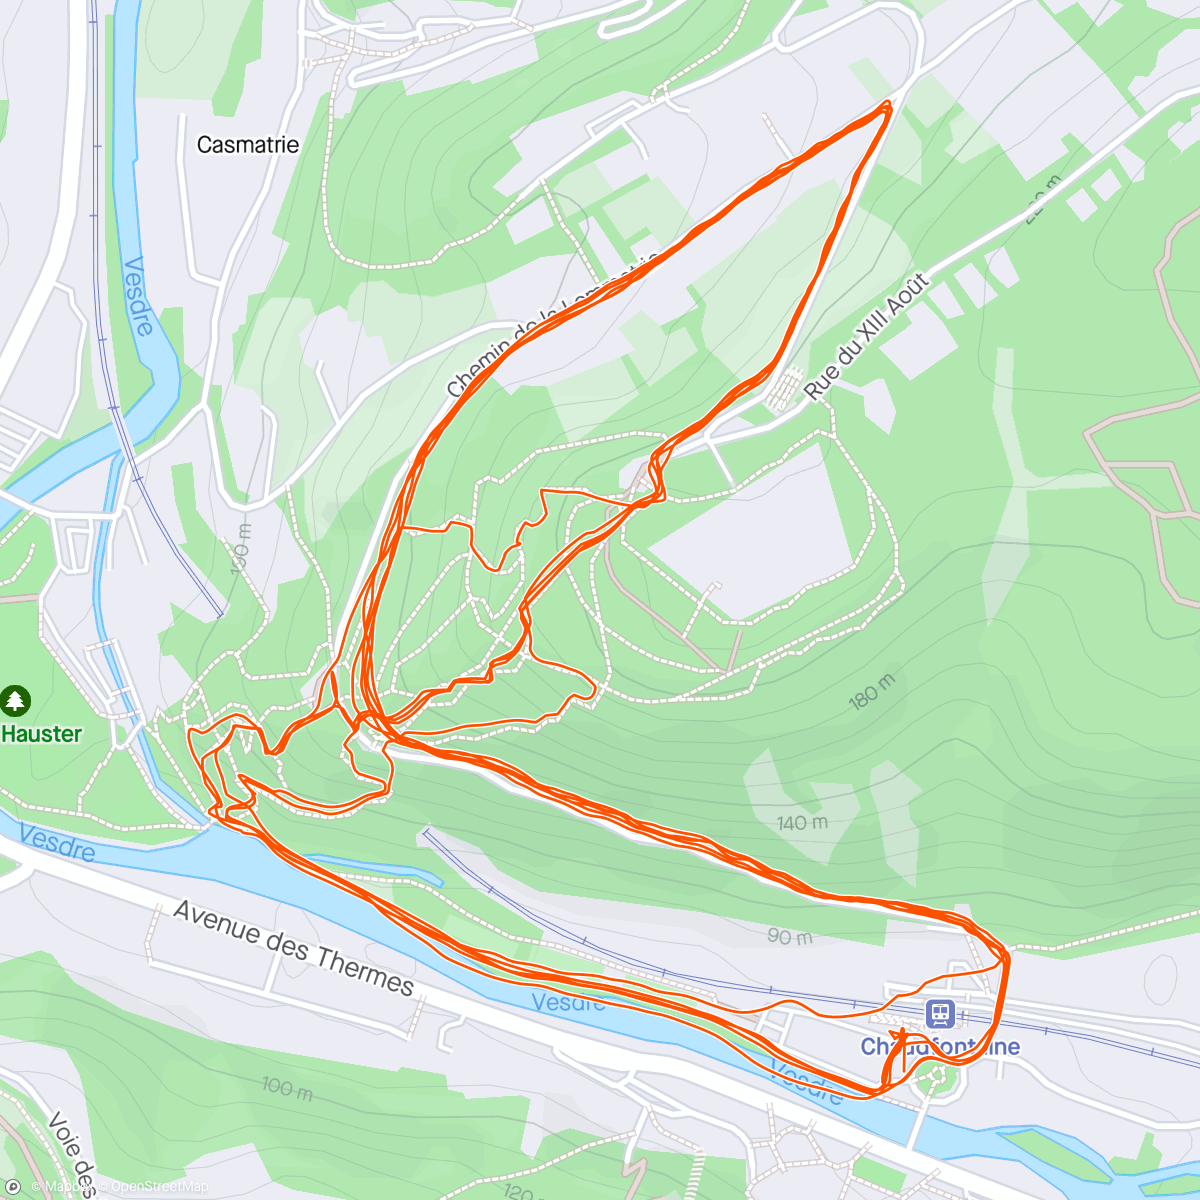 Map of the activity, Chaudfontaine (helft niet opgenomen)